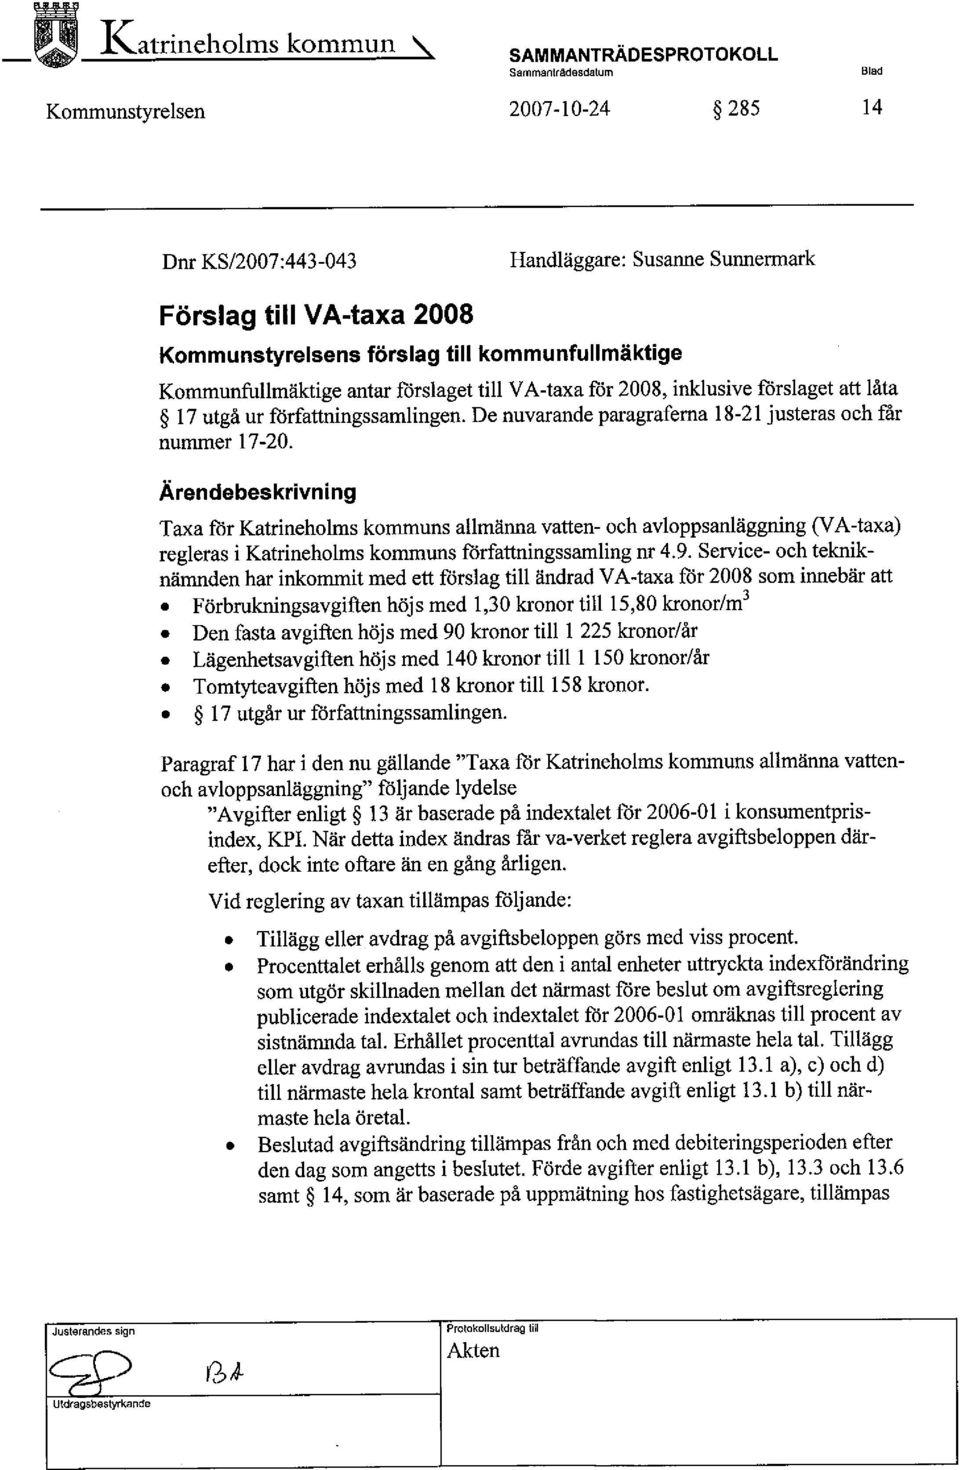 forslaget til V A-taxa for 2008, inklusive forslaget att låta 17 utgå ur forfattningssamlingen. De nuvarande paragraferna 18-21 justeras och får nummer 17-20.